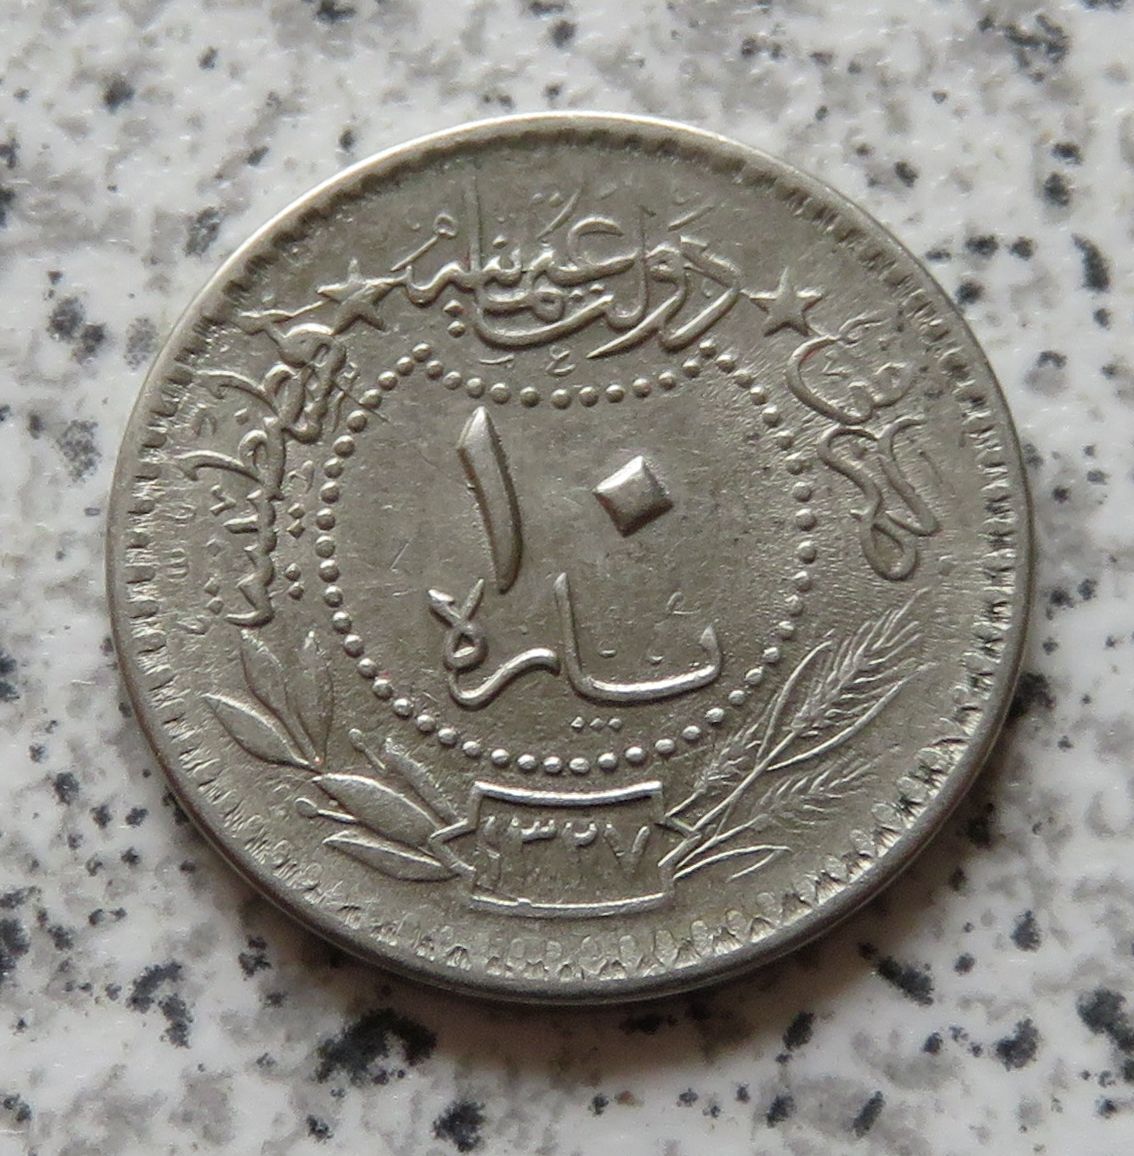  Türkei 10 Para 1327/5 (1913)   